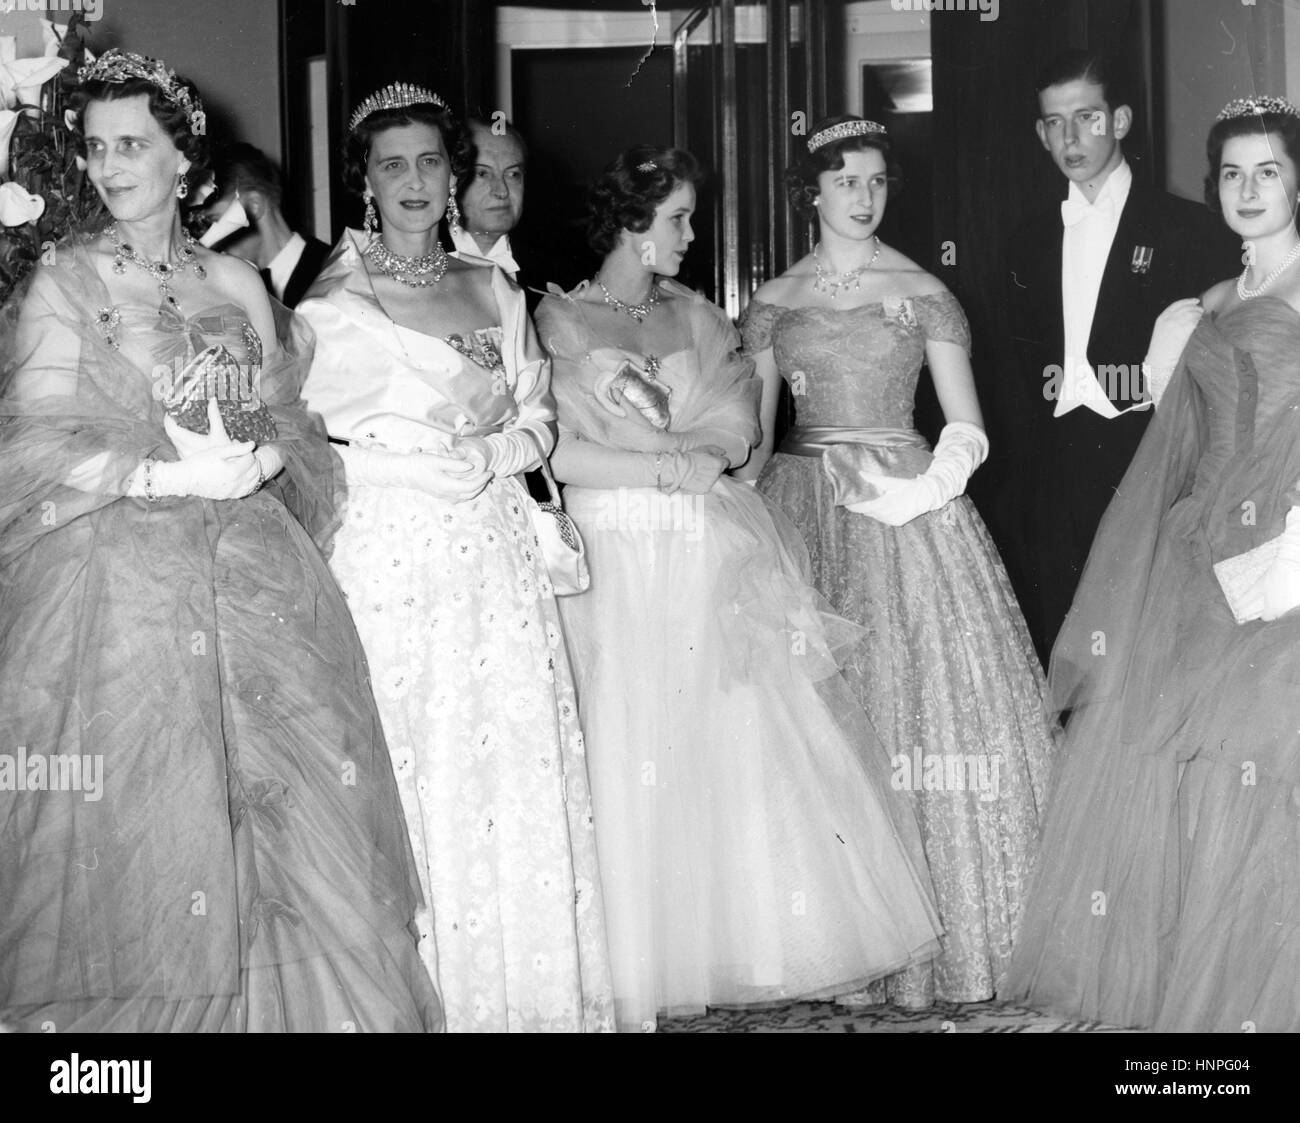 La principessa Alexandra, la onorevole deputata Ogilvy, terzo da destra accanto al suo futuro marito Angus Ogilvy presso il ricevimento di nozze per la principessa Maria Pia in Italia nel 1955 Foto Stock